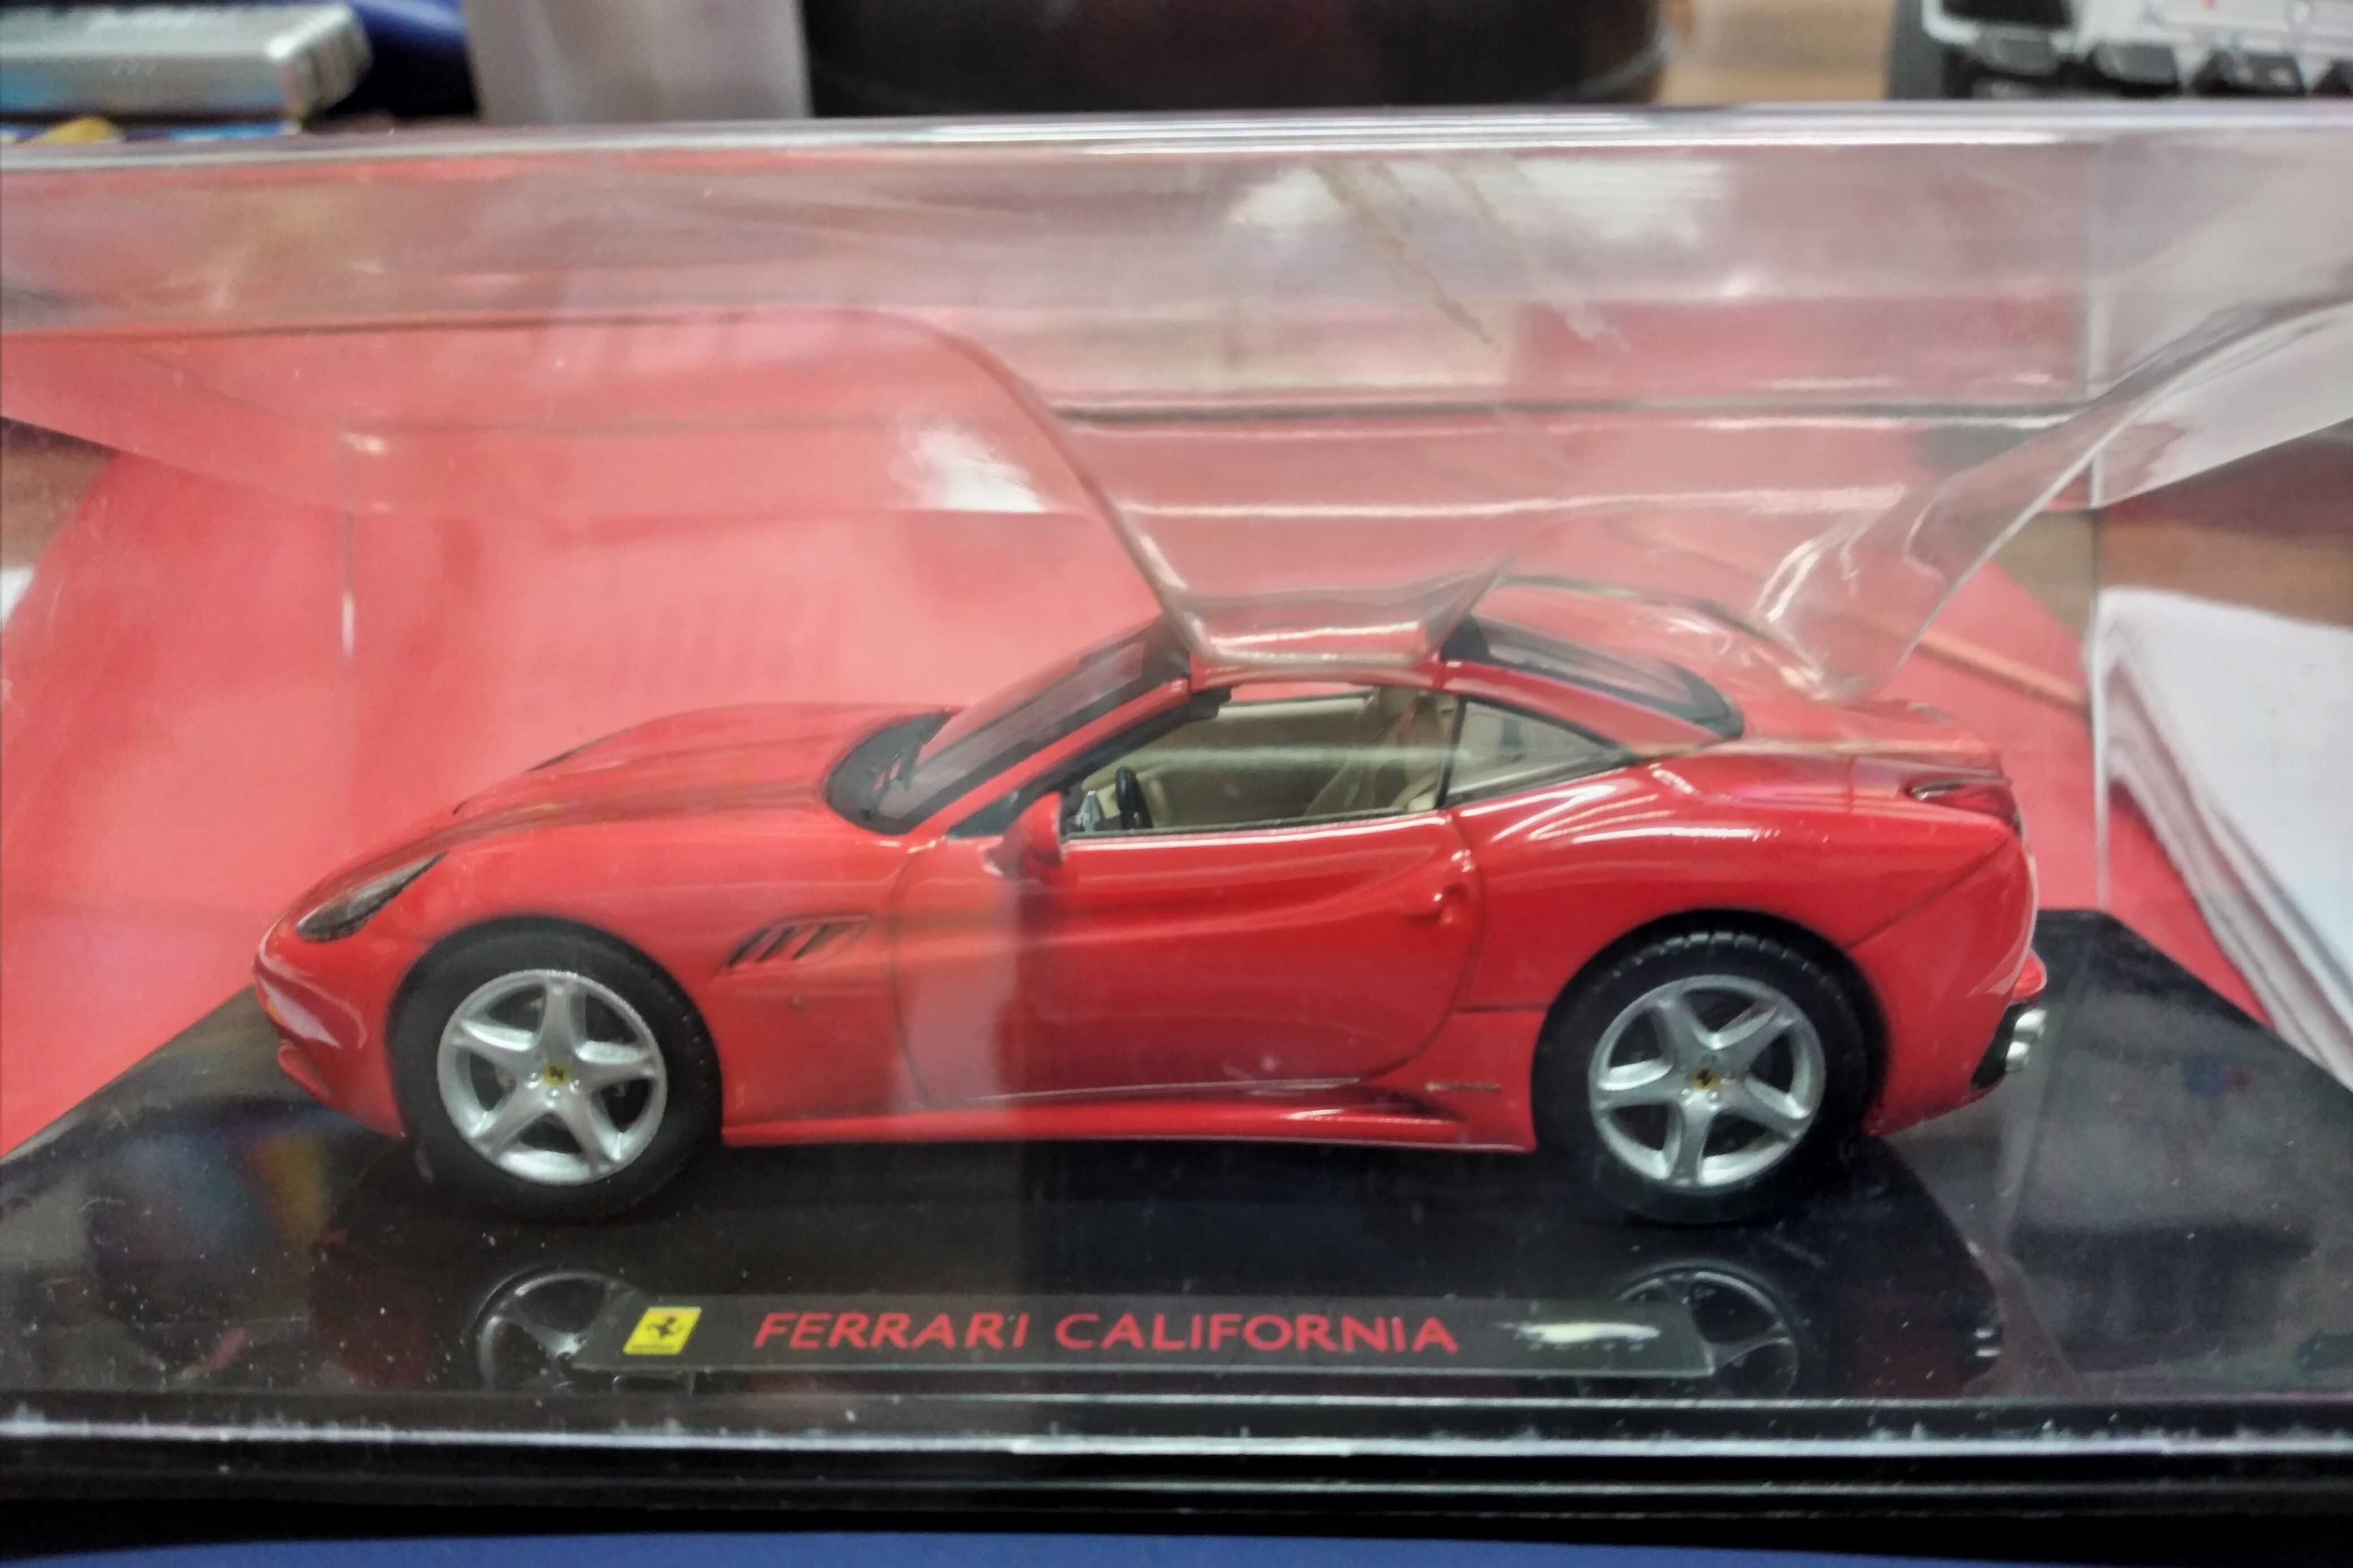 Miniatura Ferrari California 1:43 - Mattel Hot Wheels Elite